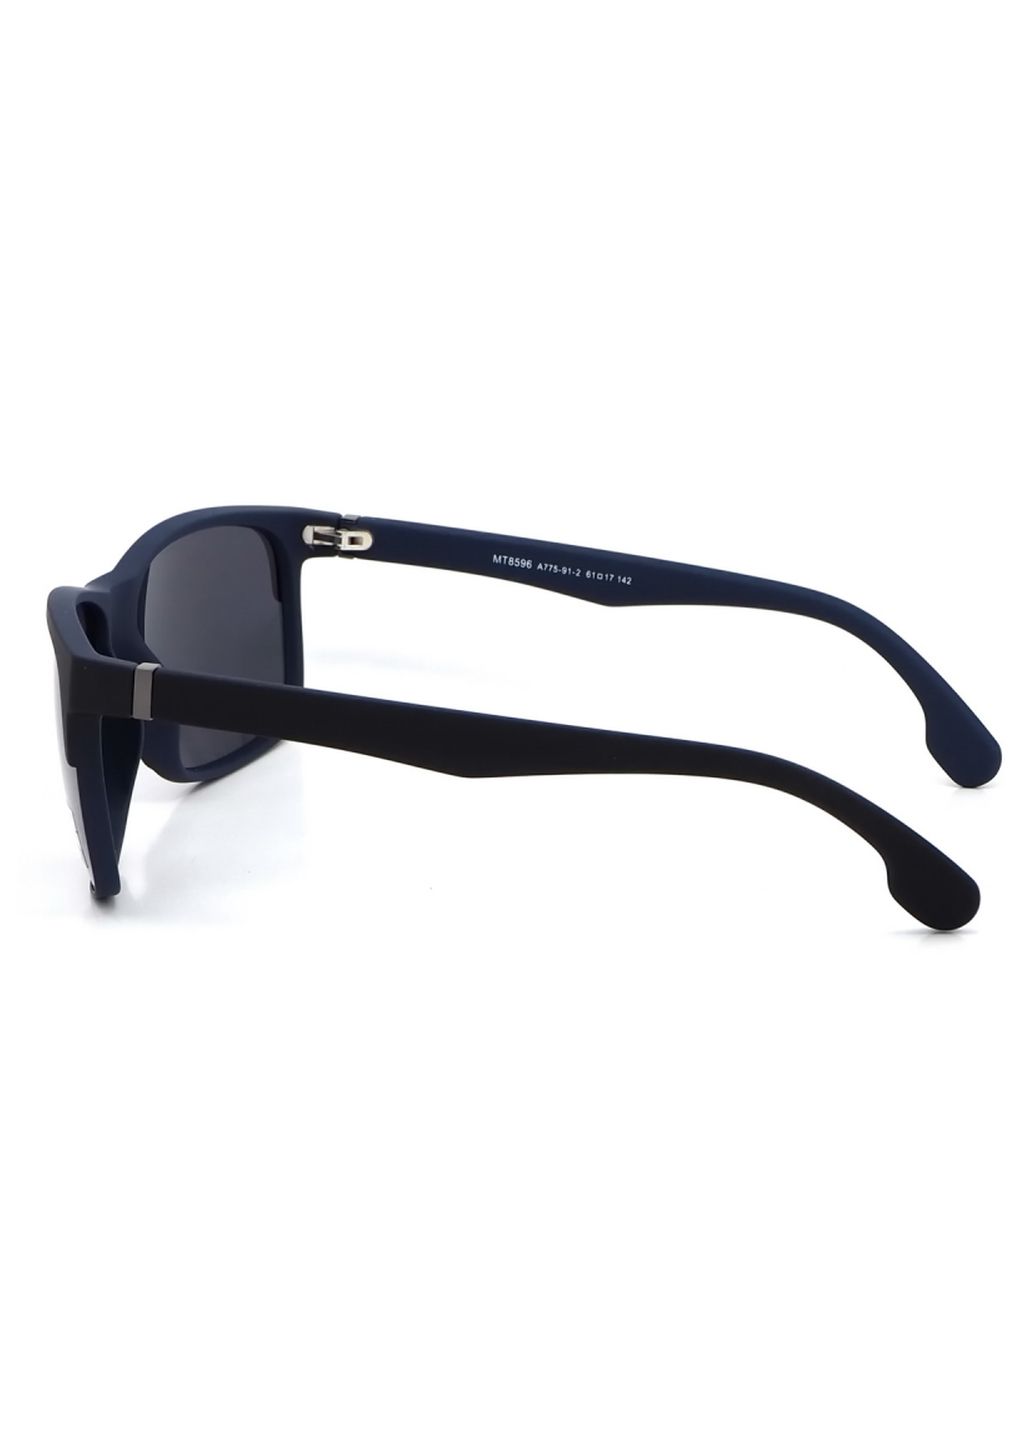 Купить Черные мужские солнцезащитные очки Matrix с поляризацией MT8596 111022 в интернет-магазине